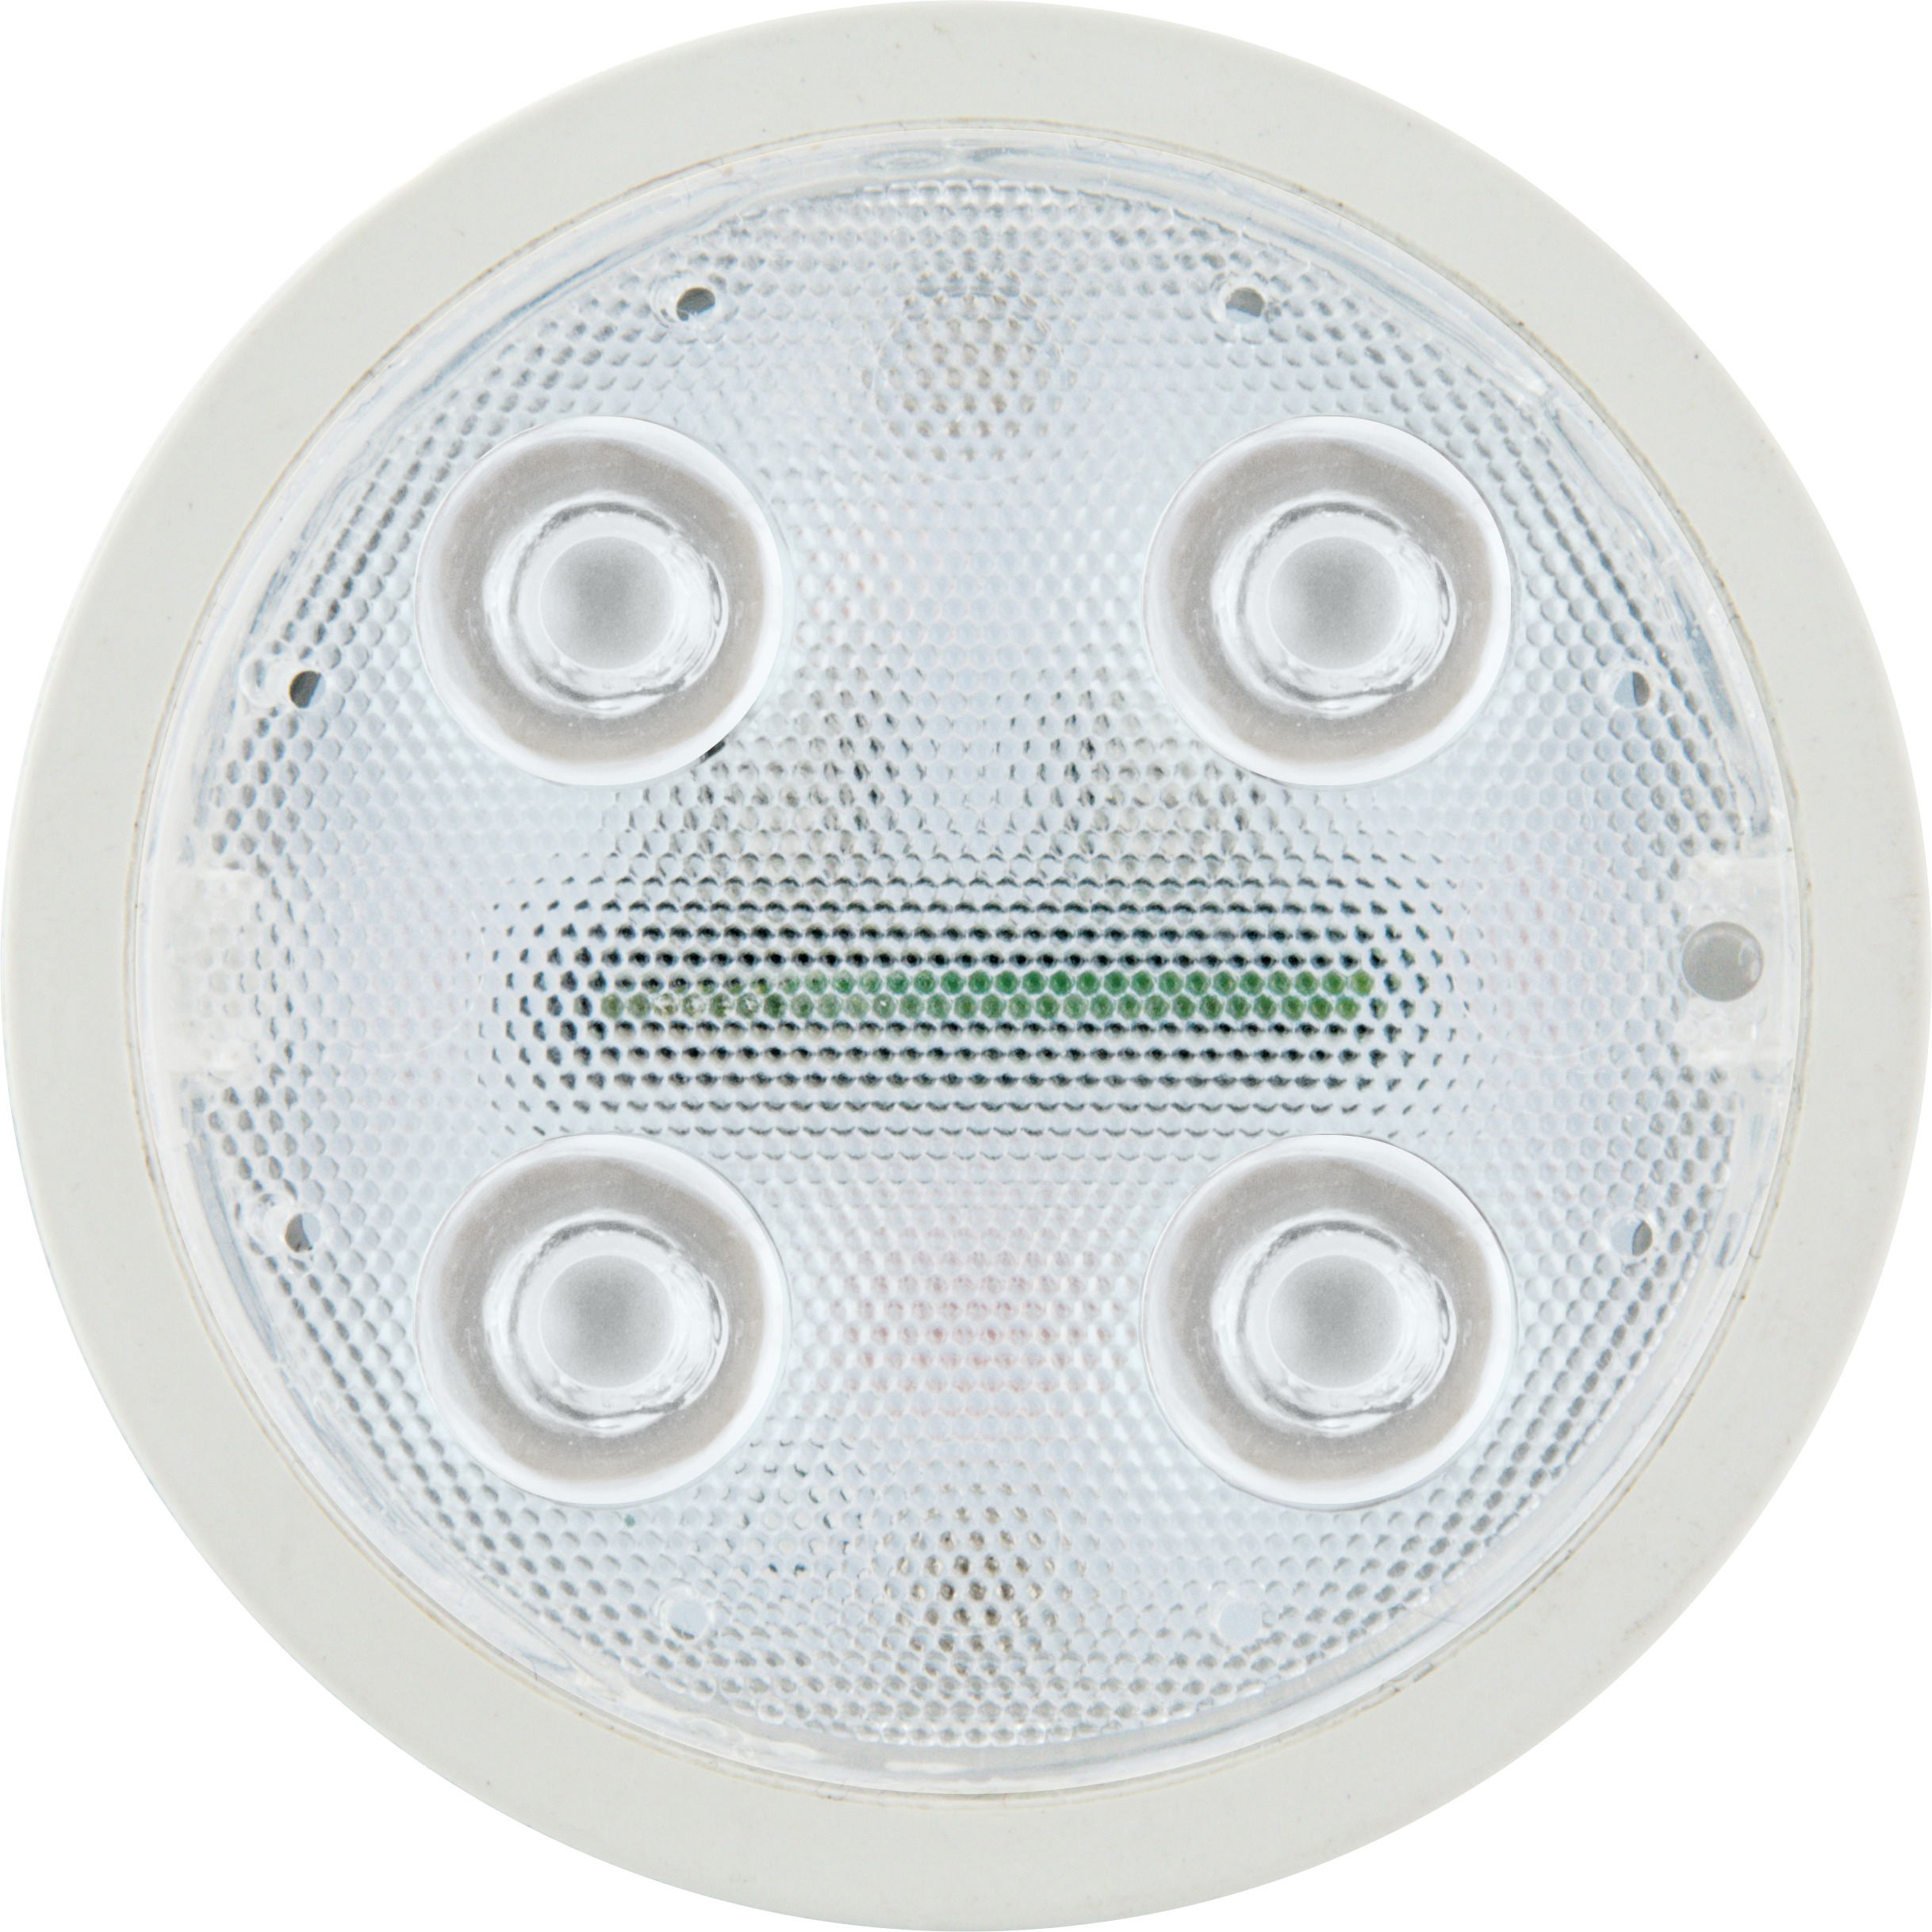 Warmweiß dimmbares SCHWAIGER LED als (GU10) Wohnlicht -HAL400- Leuchtmittel